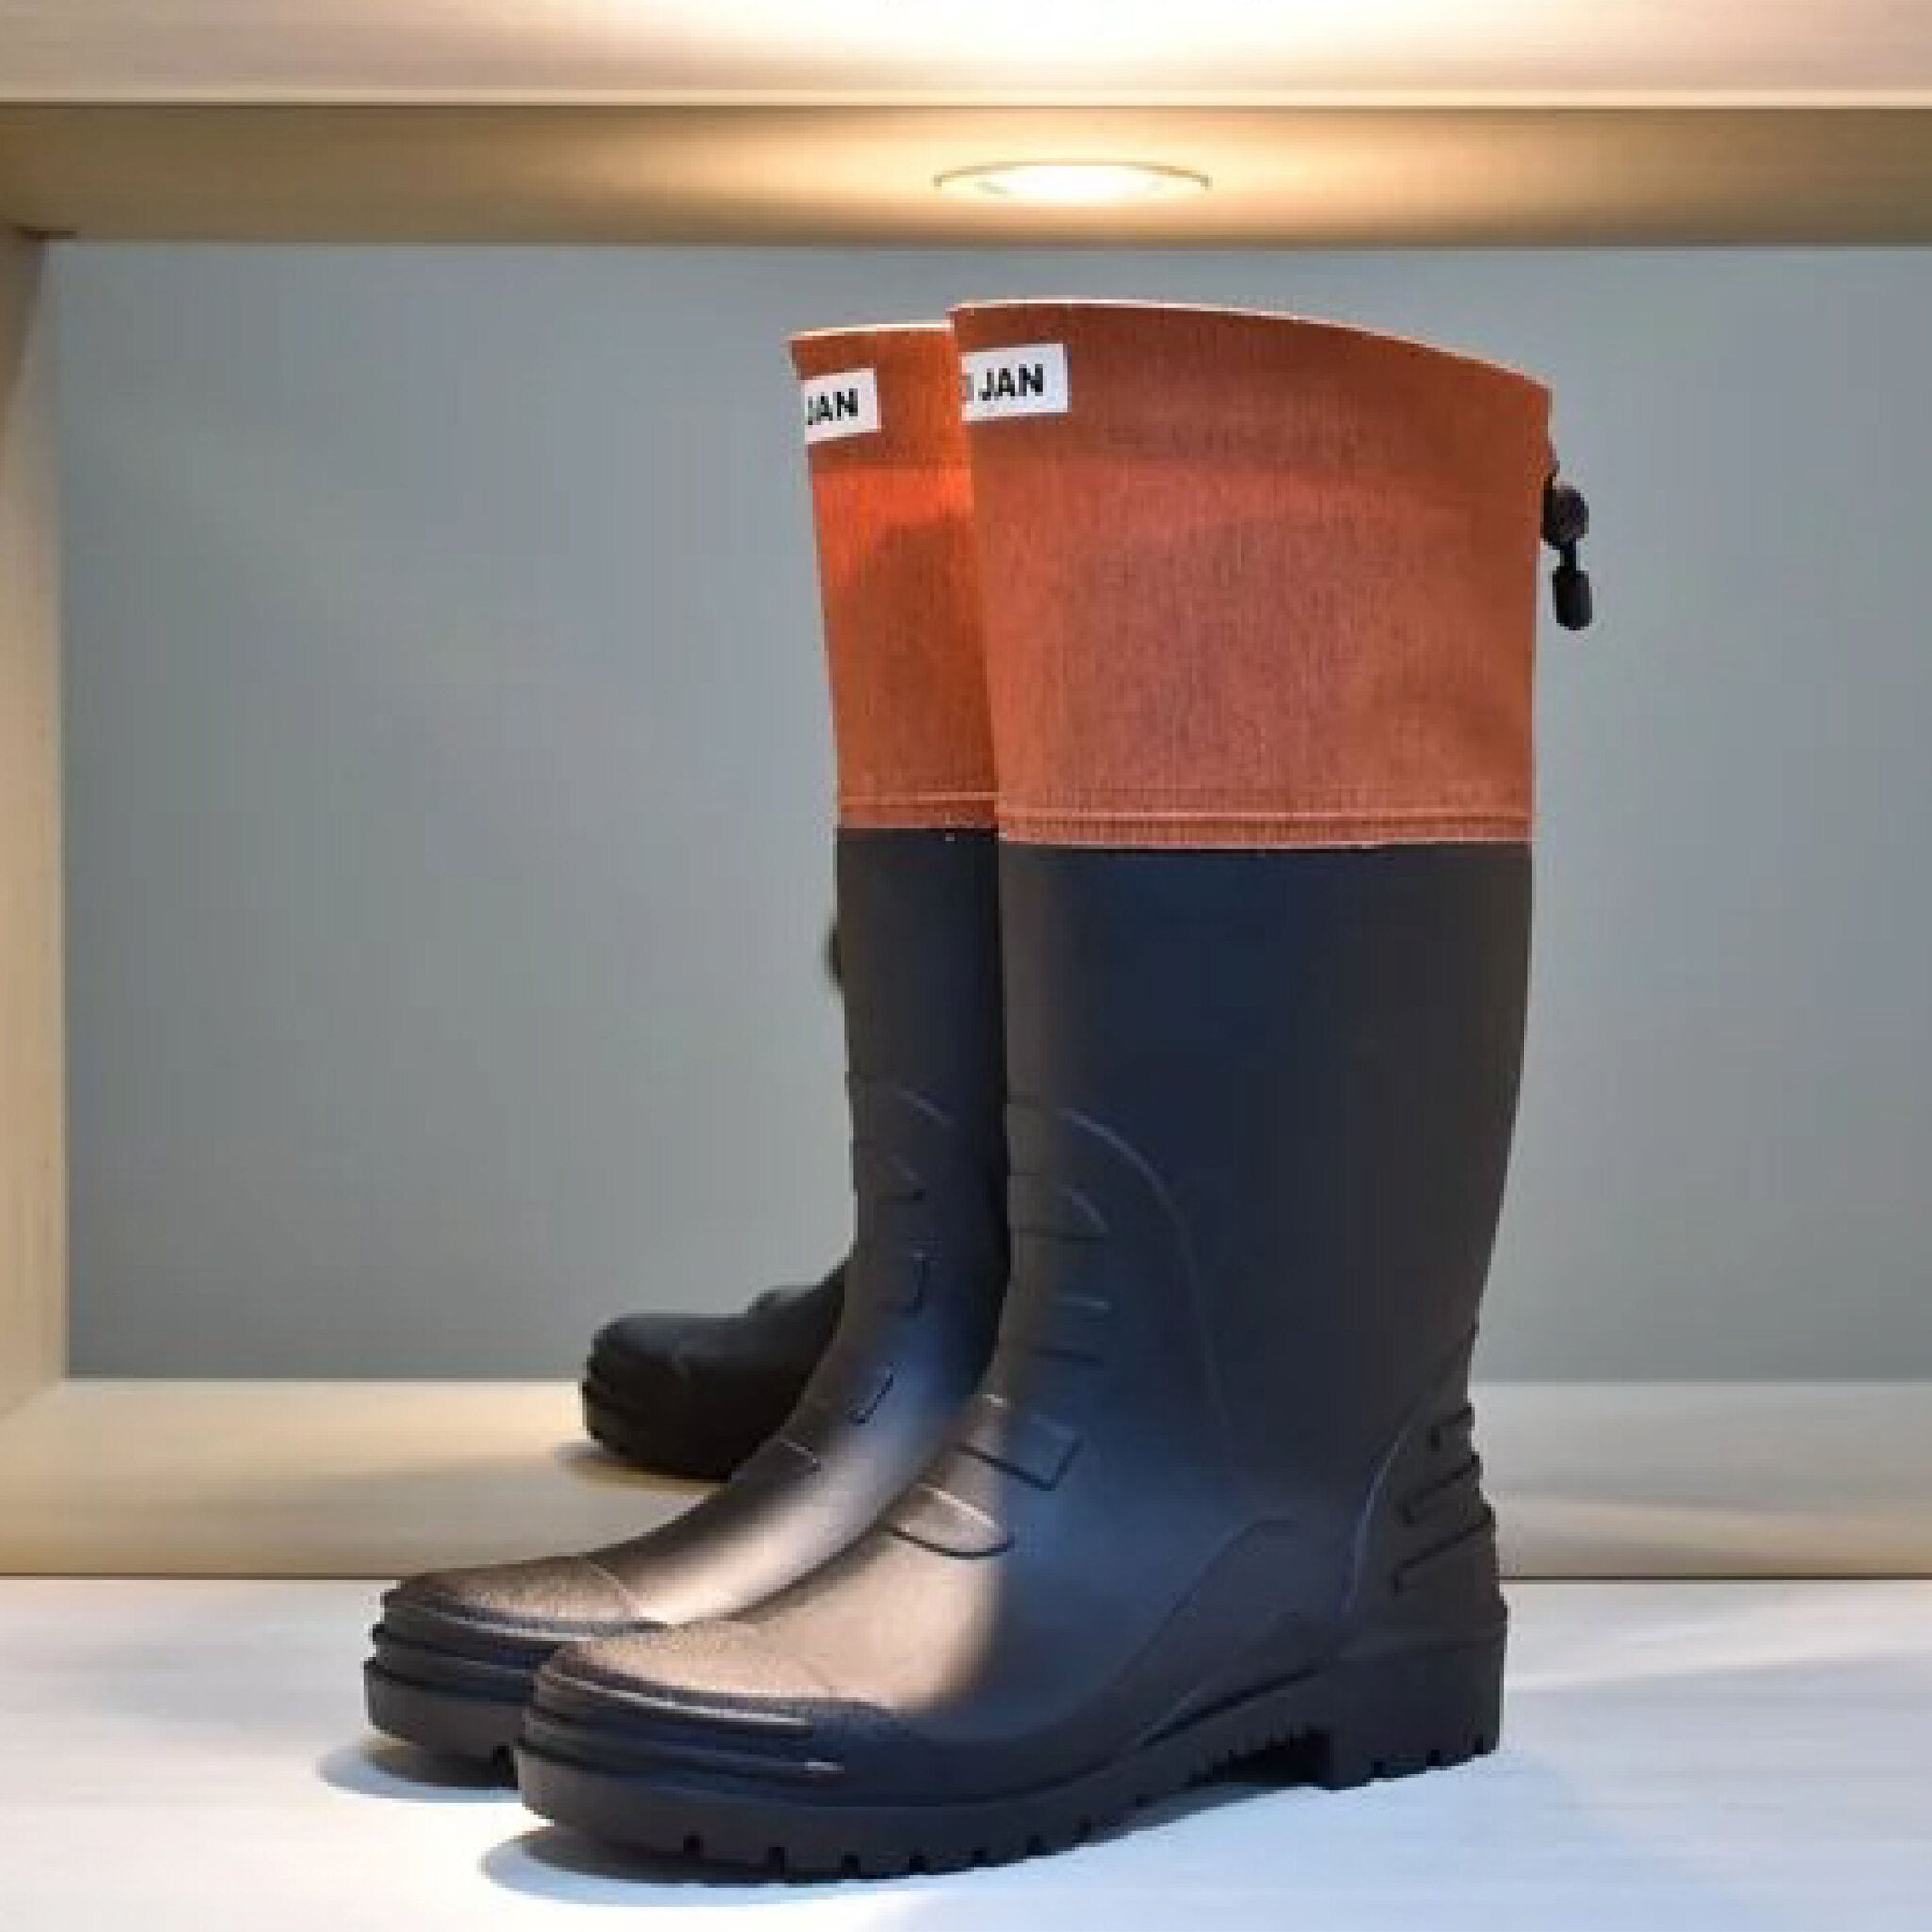 【DI JAN】D3 系列 後束口設計 可摺式登山雨鞋 文青橘 di-jan-orange